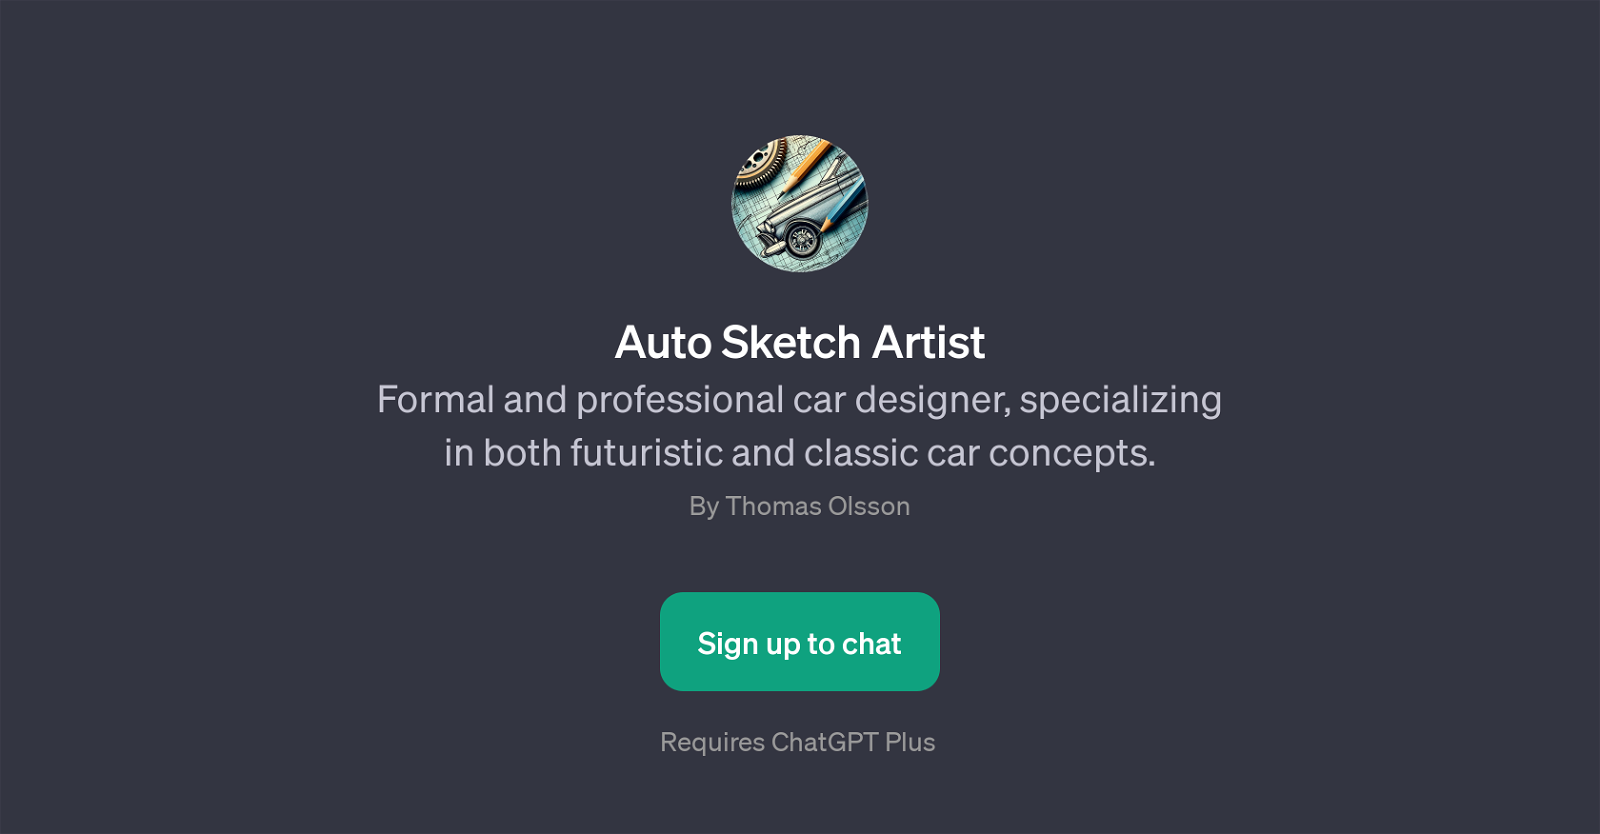 Auto Sketch Artist website